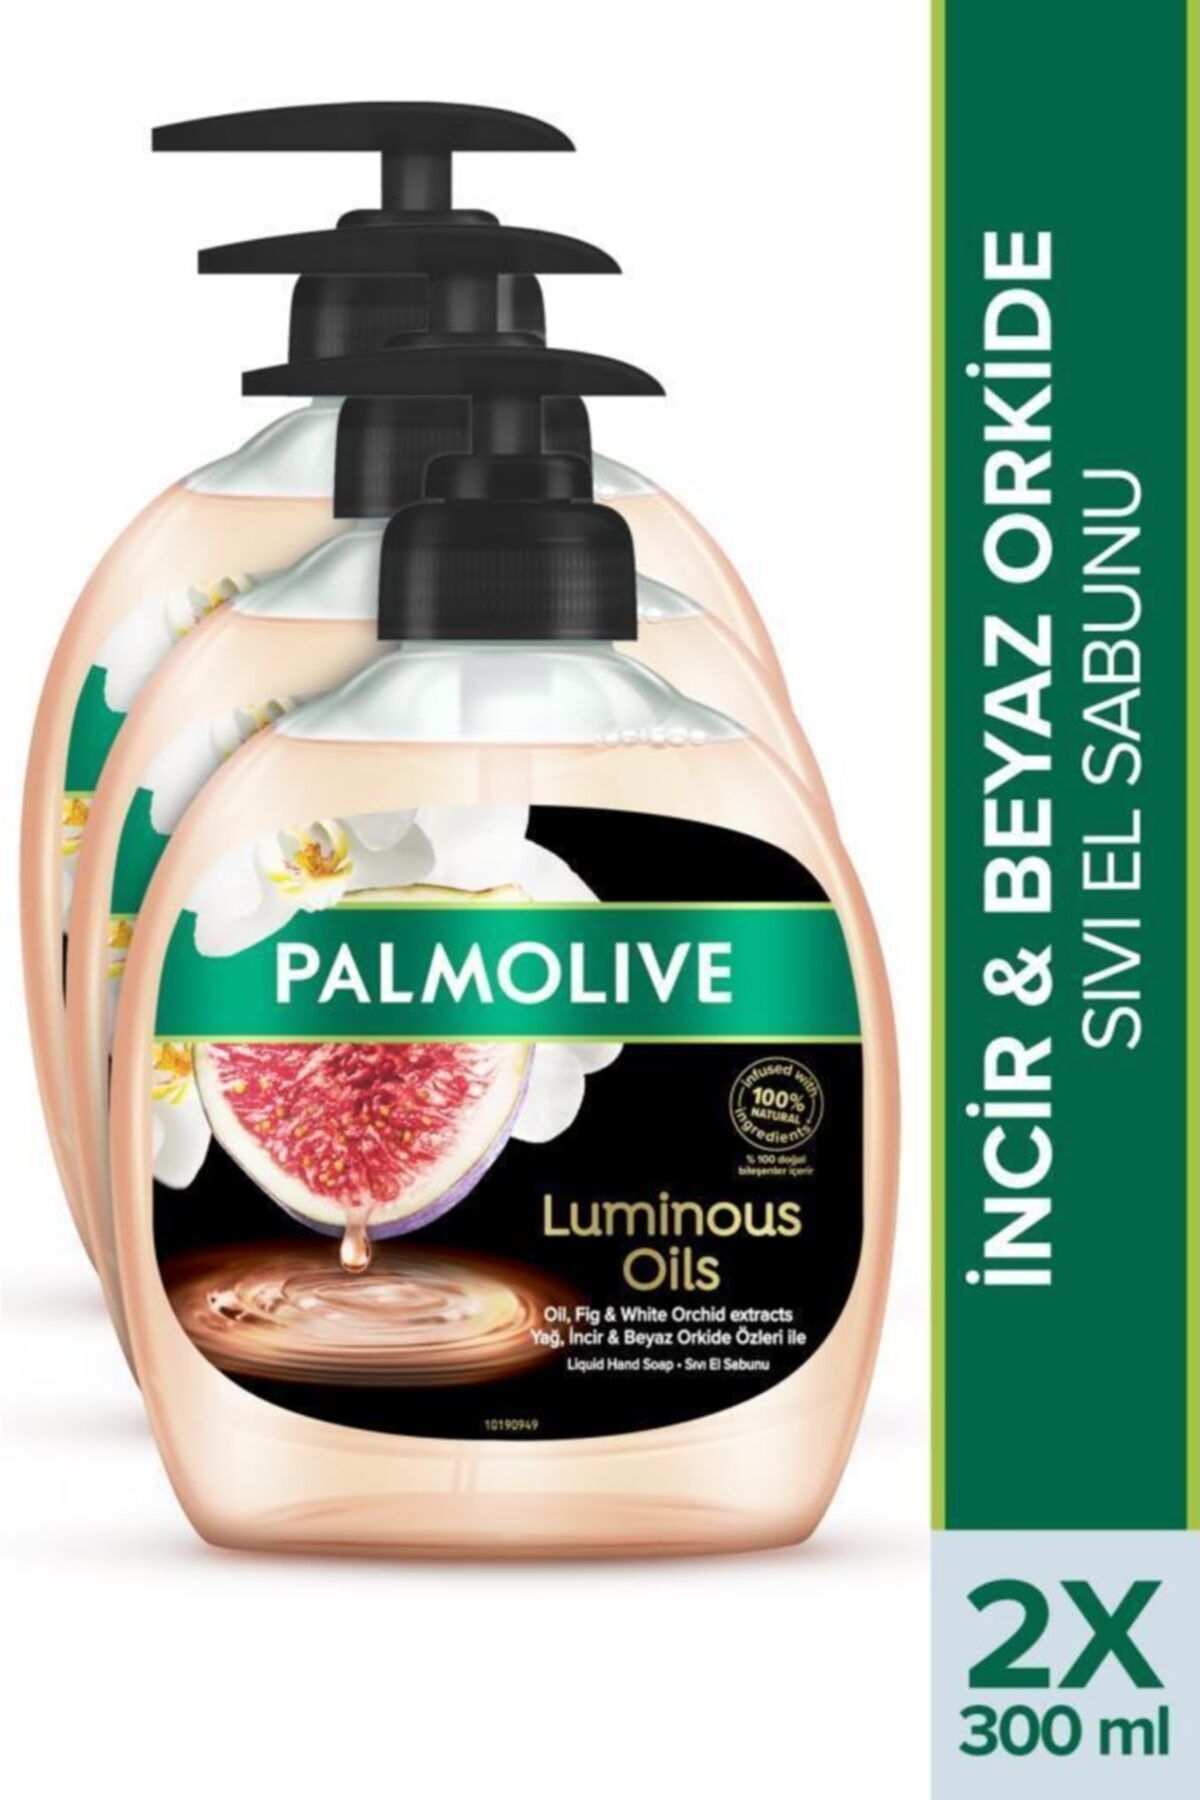 Palmolive Luminous Oils İncir & Beyaz Orkide Özleri Sıvı El Sabunu 3 x 300 ml